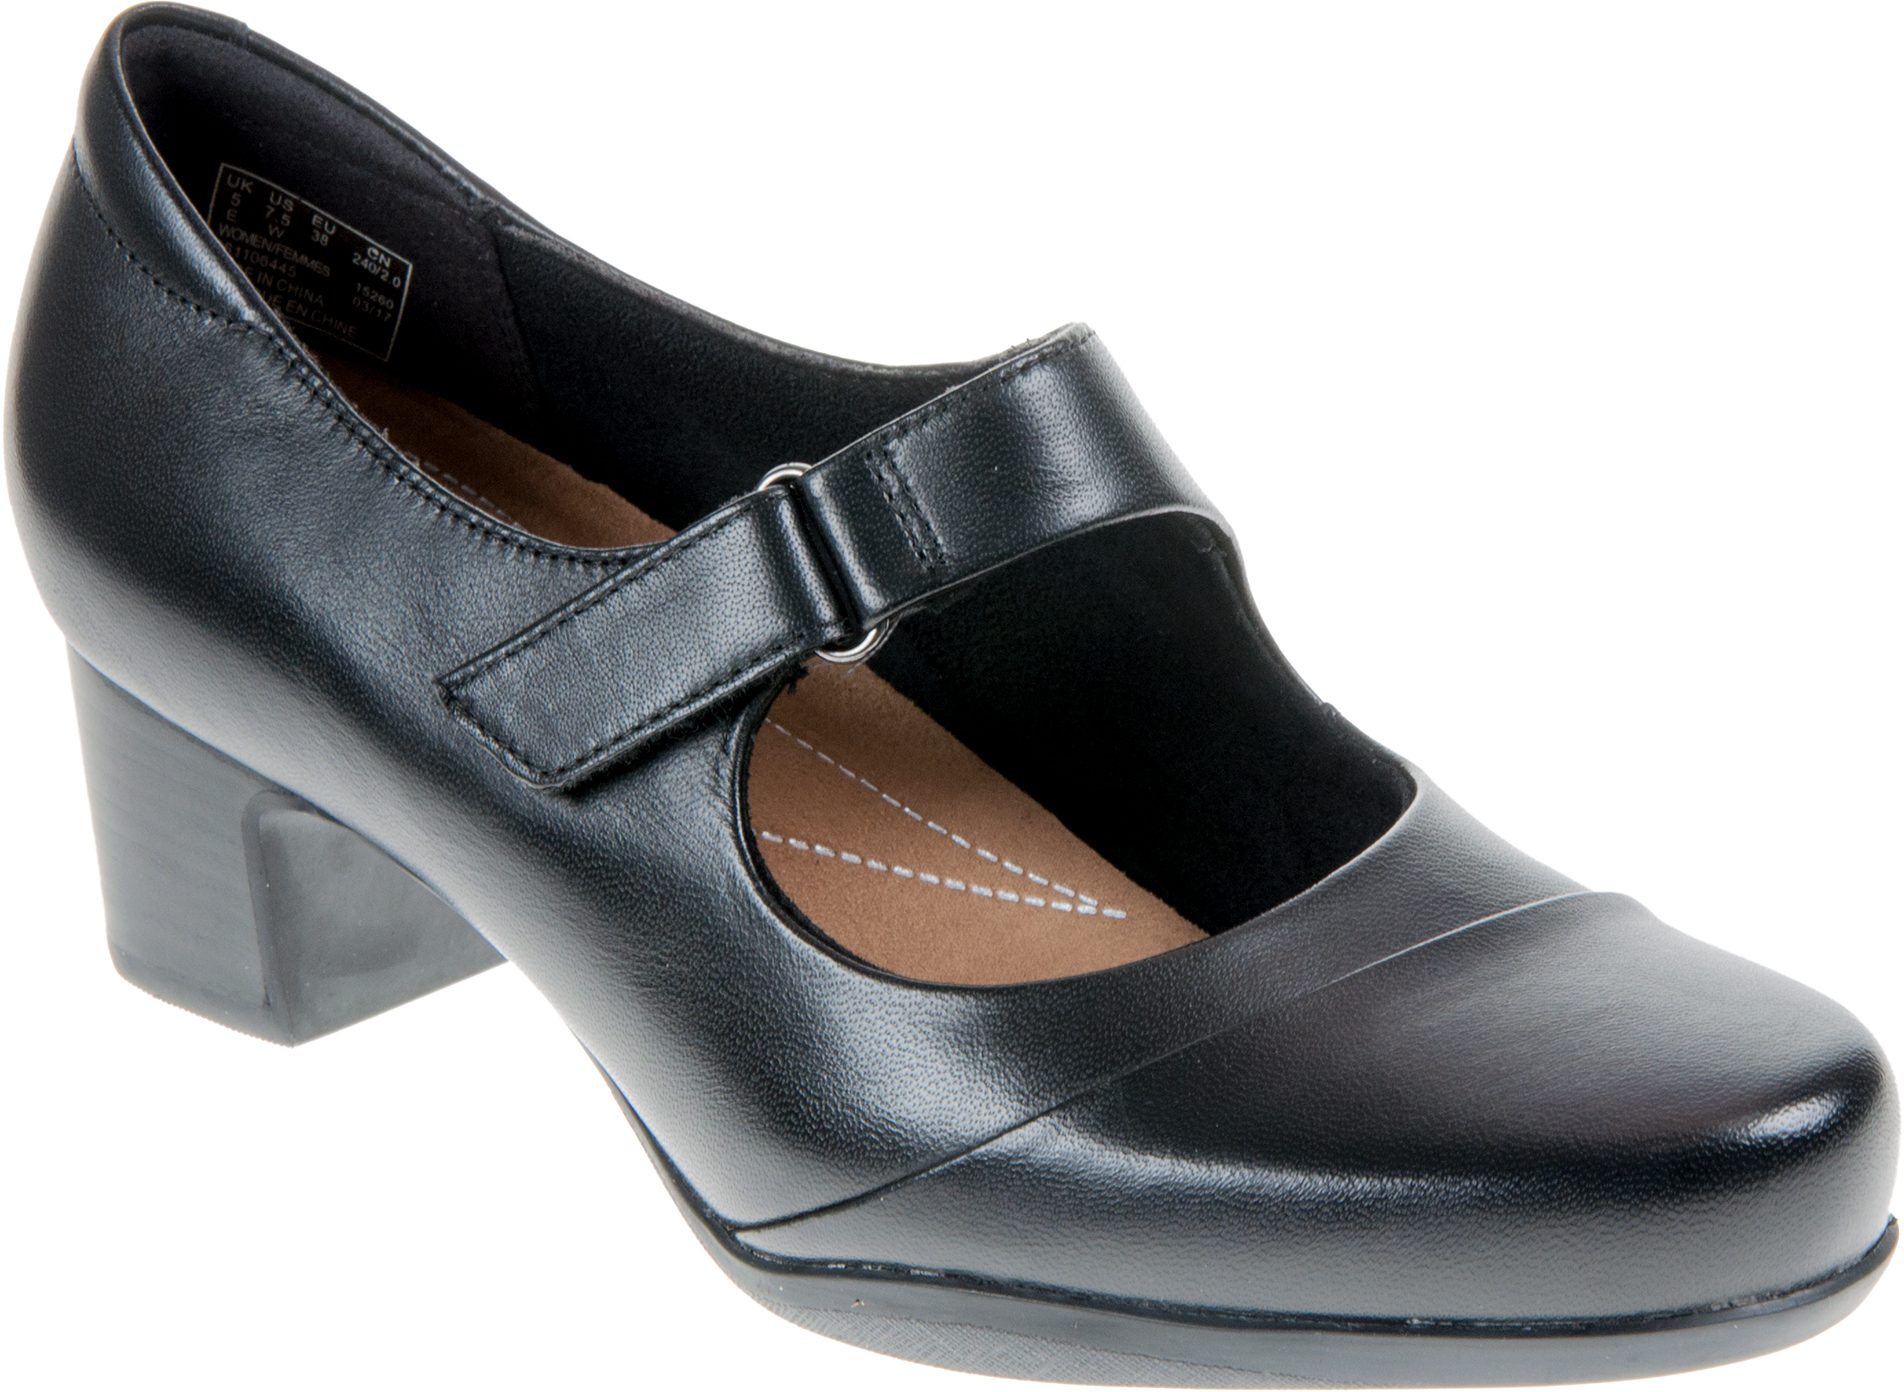 rosalyn wren clarks shoes